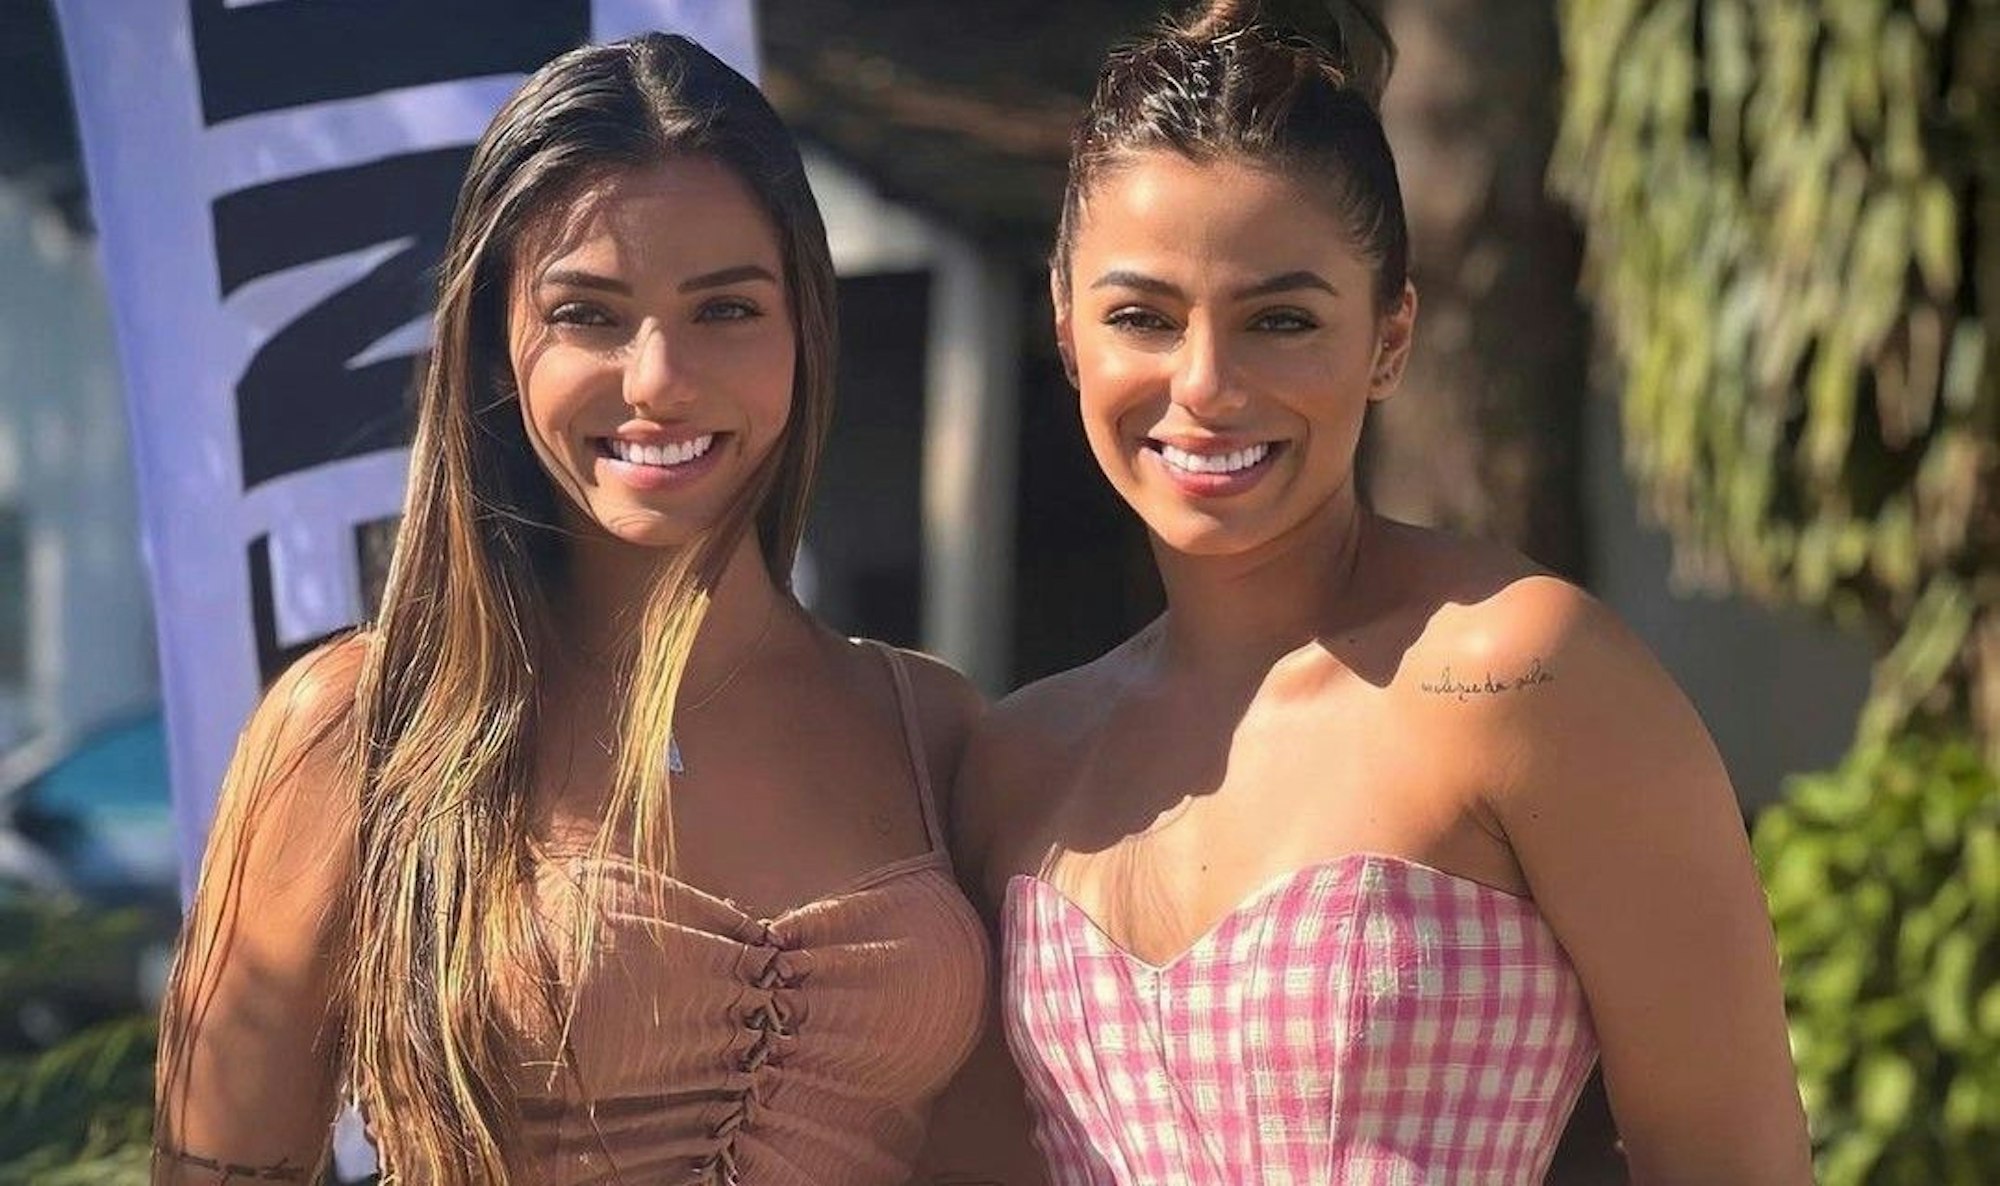 19. Januar 2023: Die beiden brasilianischen Volleyball-Zwillinge Key und Keyt Alves posieren gemeinsam auf einem bei Instagram veröffentlichten Foto.